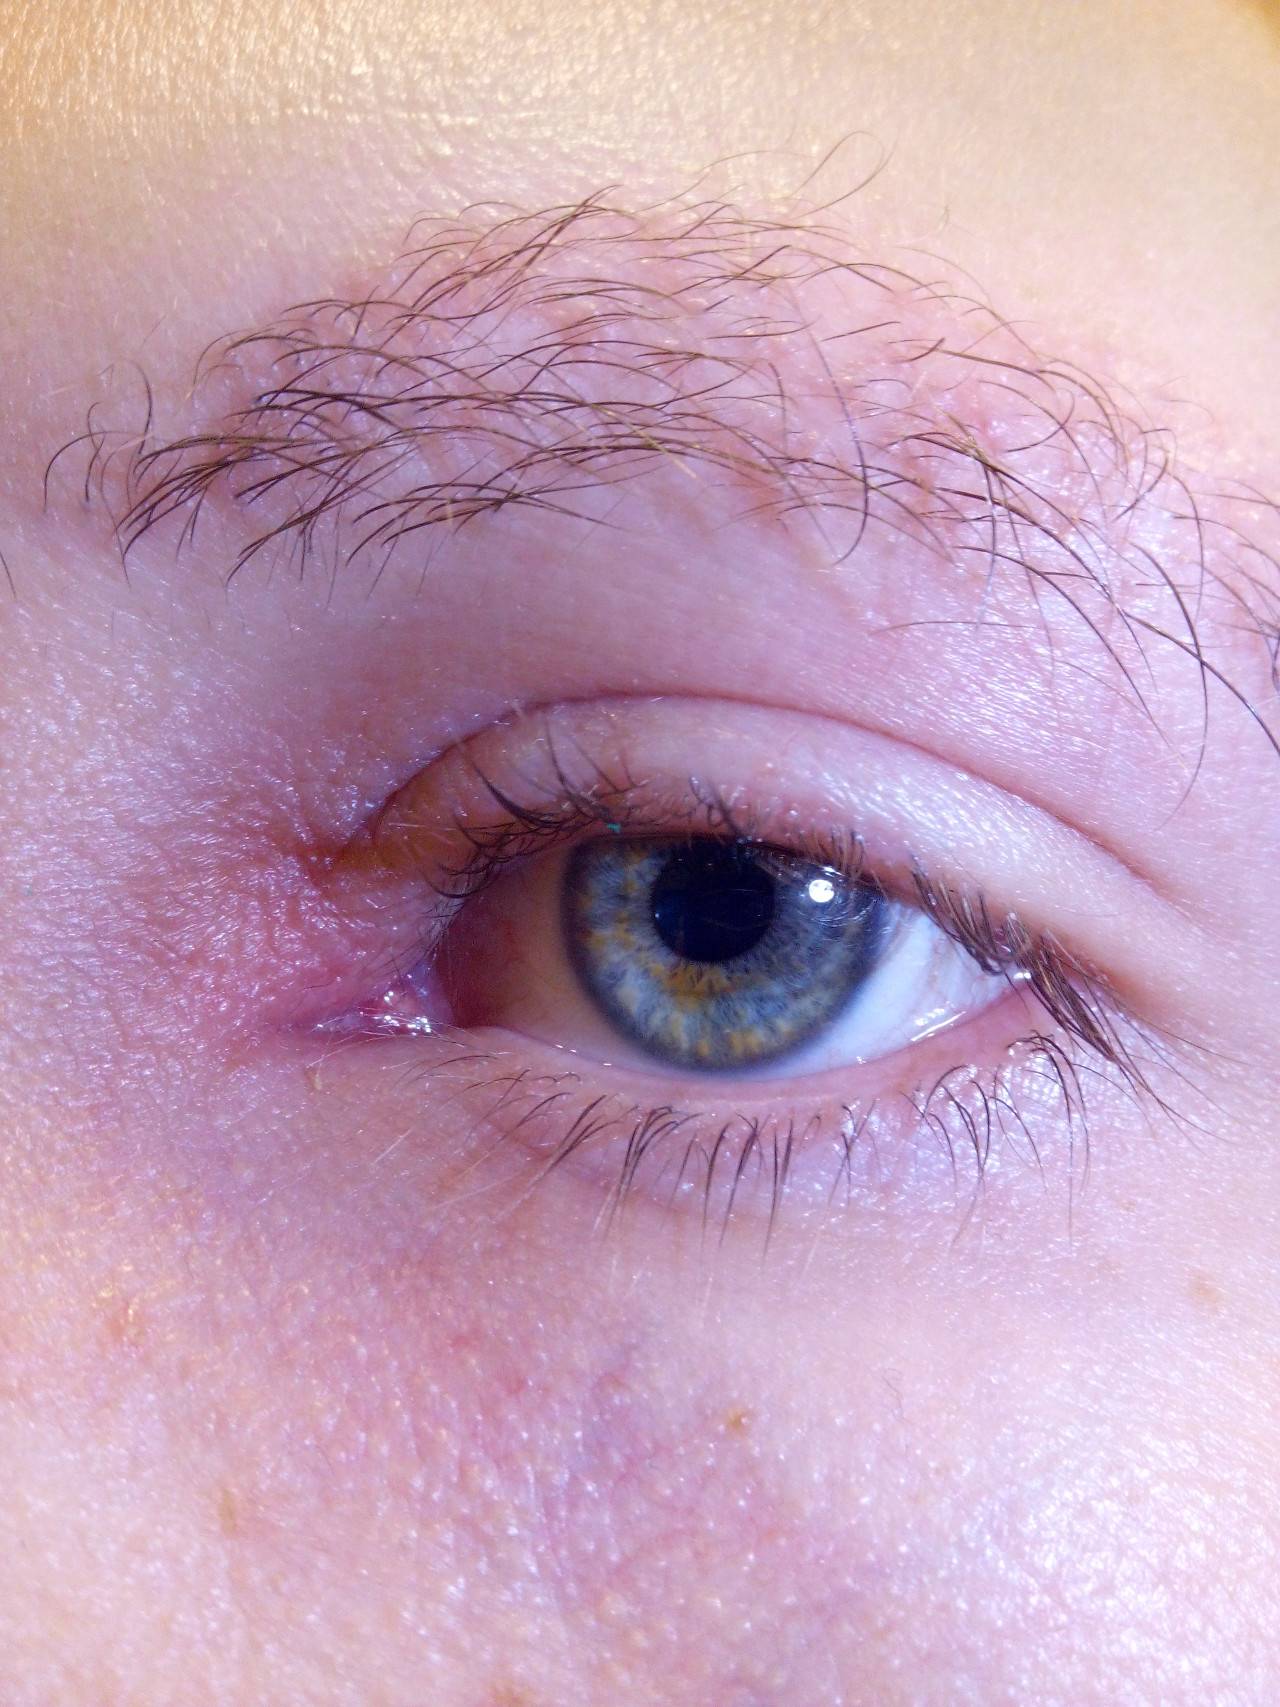 Воспаление века верхнего - воспаленный глаз, покраснел и опух: как и чем лечить, что делать, если воспалилось, лечение